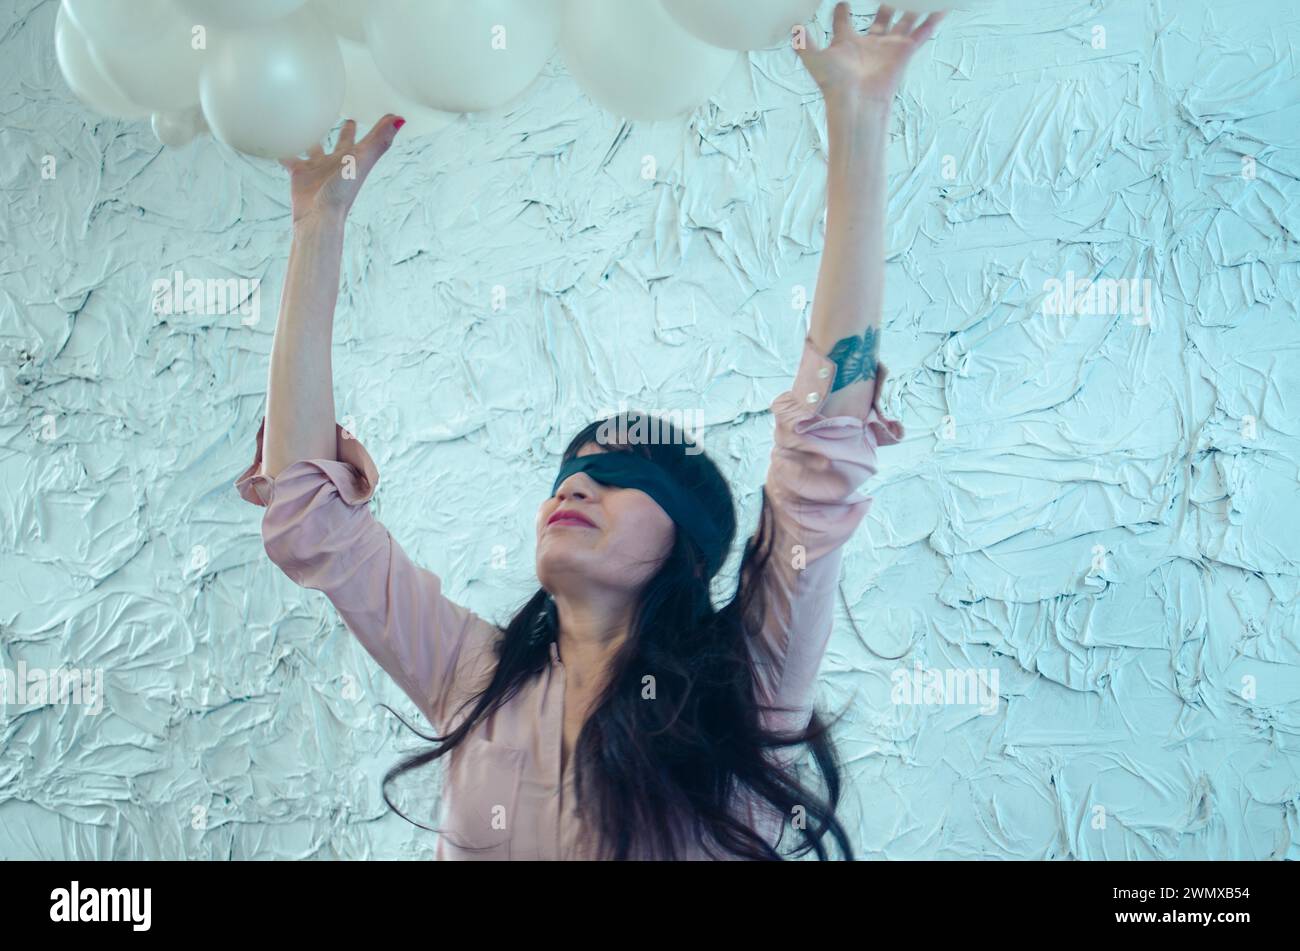 Une jeune femme hispanique adulte joueuse les yeux bandés atteignant vers le ciel, entourée d'une abondance de ballons blancs, performance artistique, danse ludique Banque D'Images